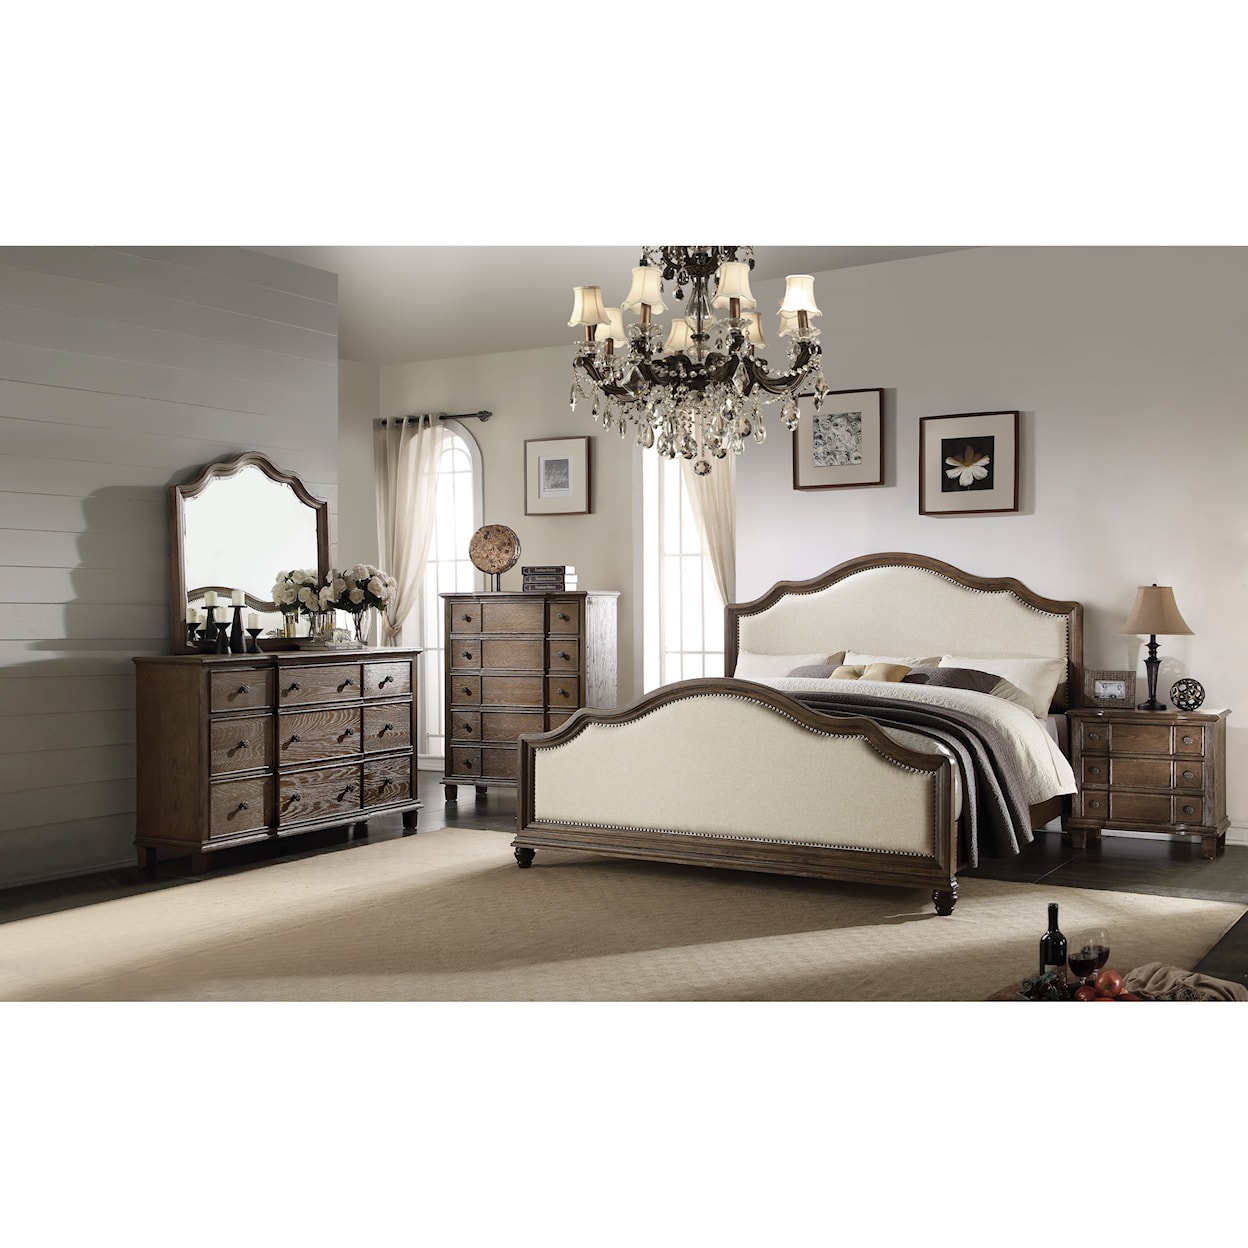 Acme Furniture Baudouin Queen Bedroom Group